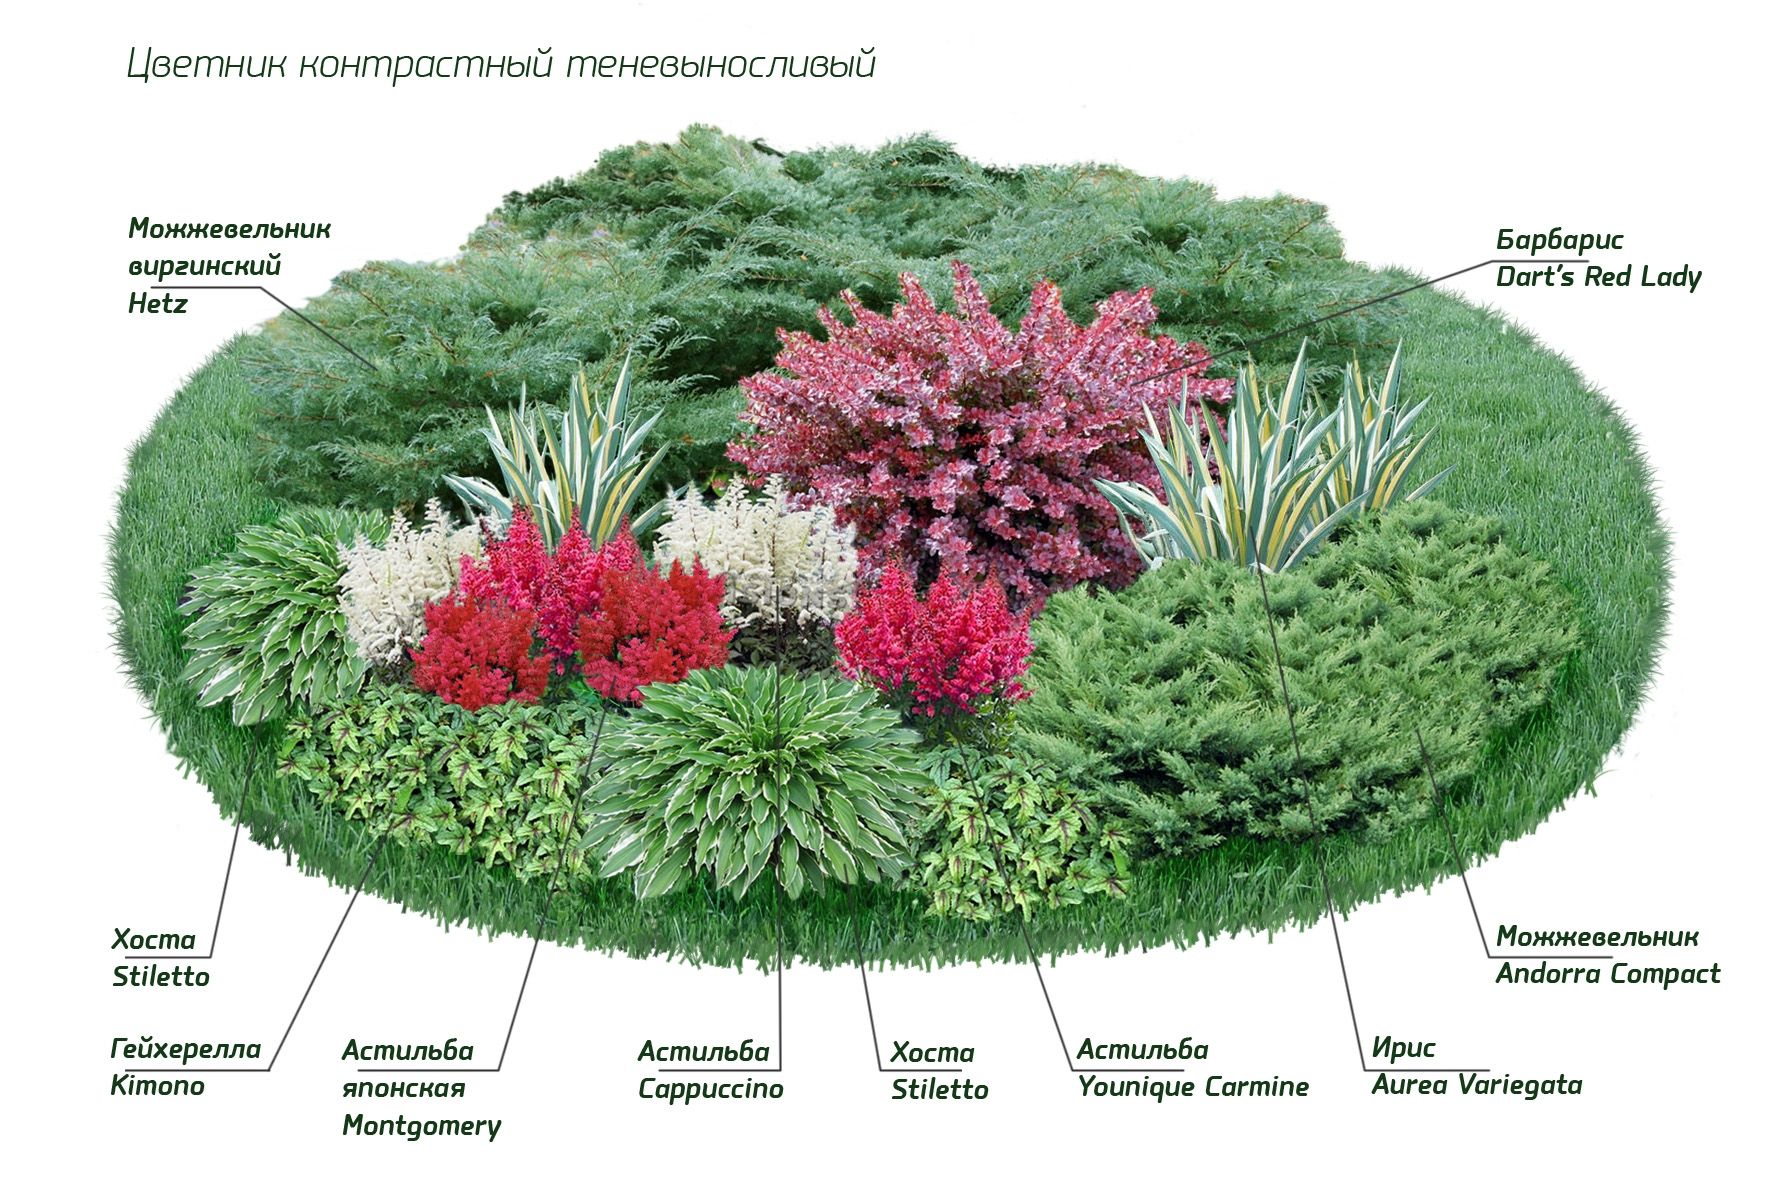 Миксбордер в ландшафтном дизайне своими руками: схема, фото, правильный подбор растений